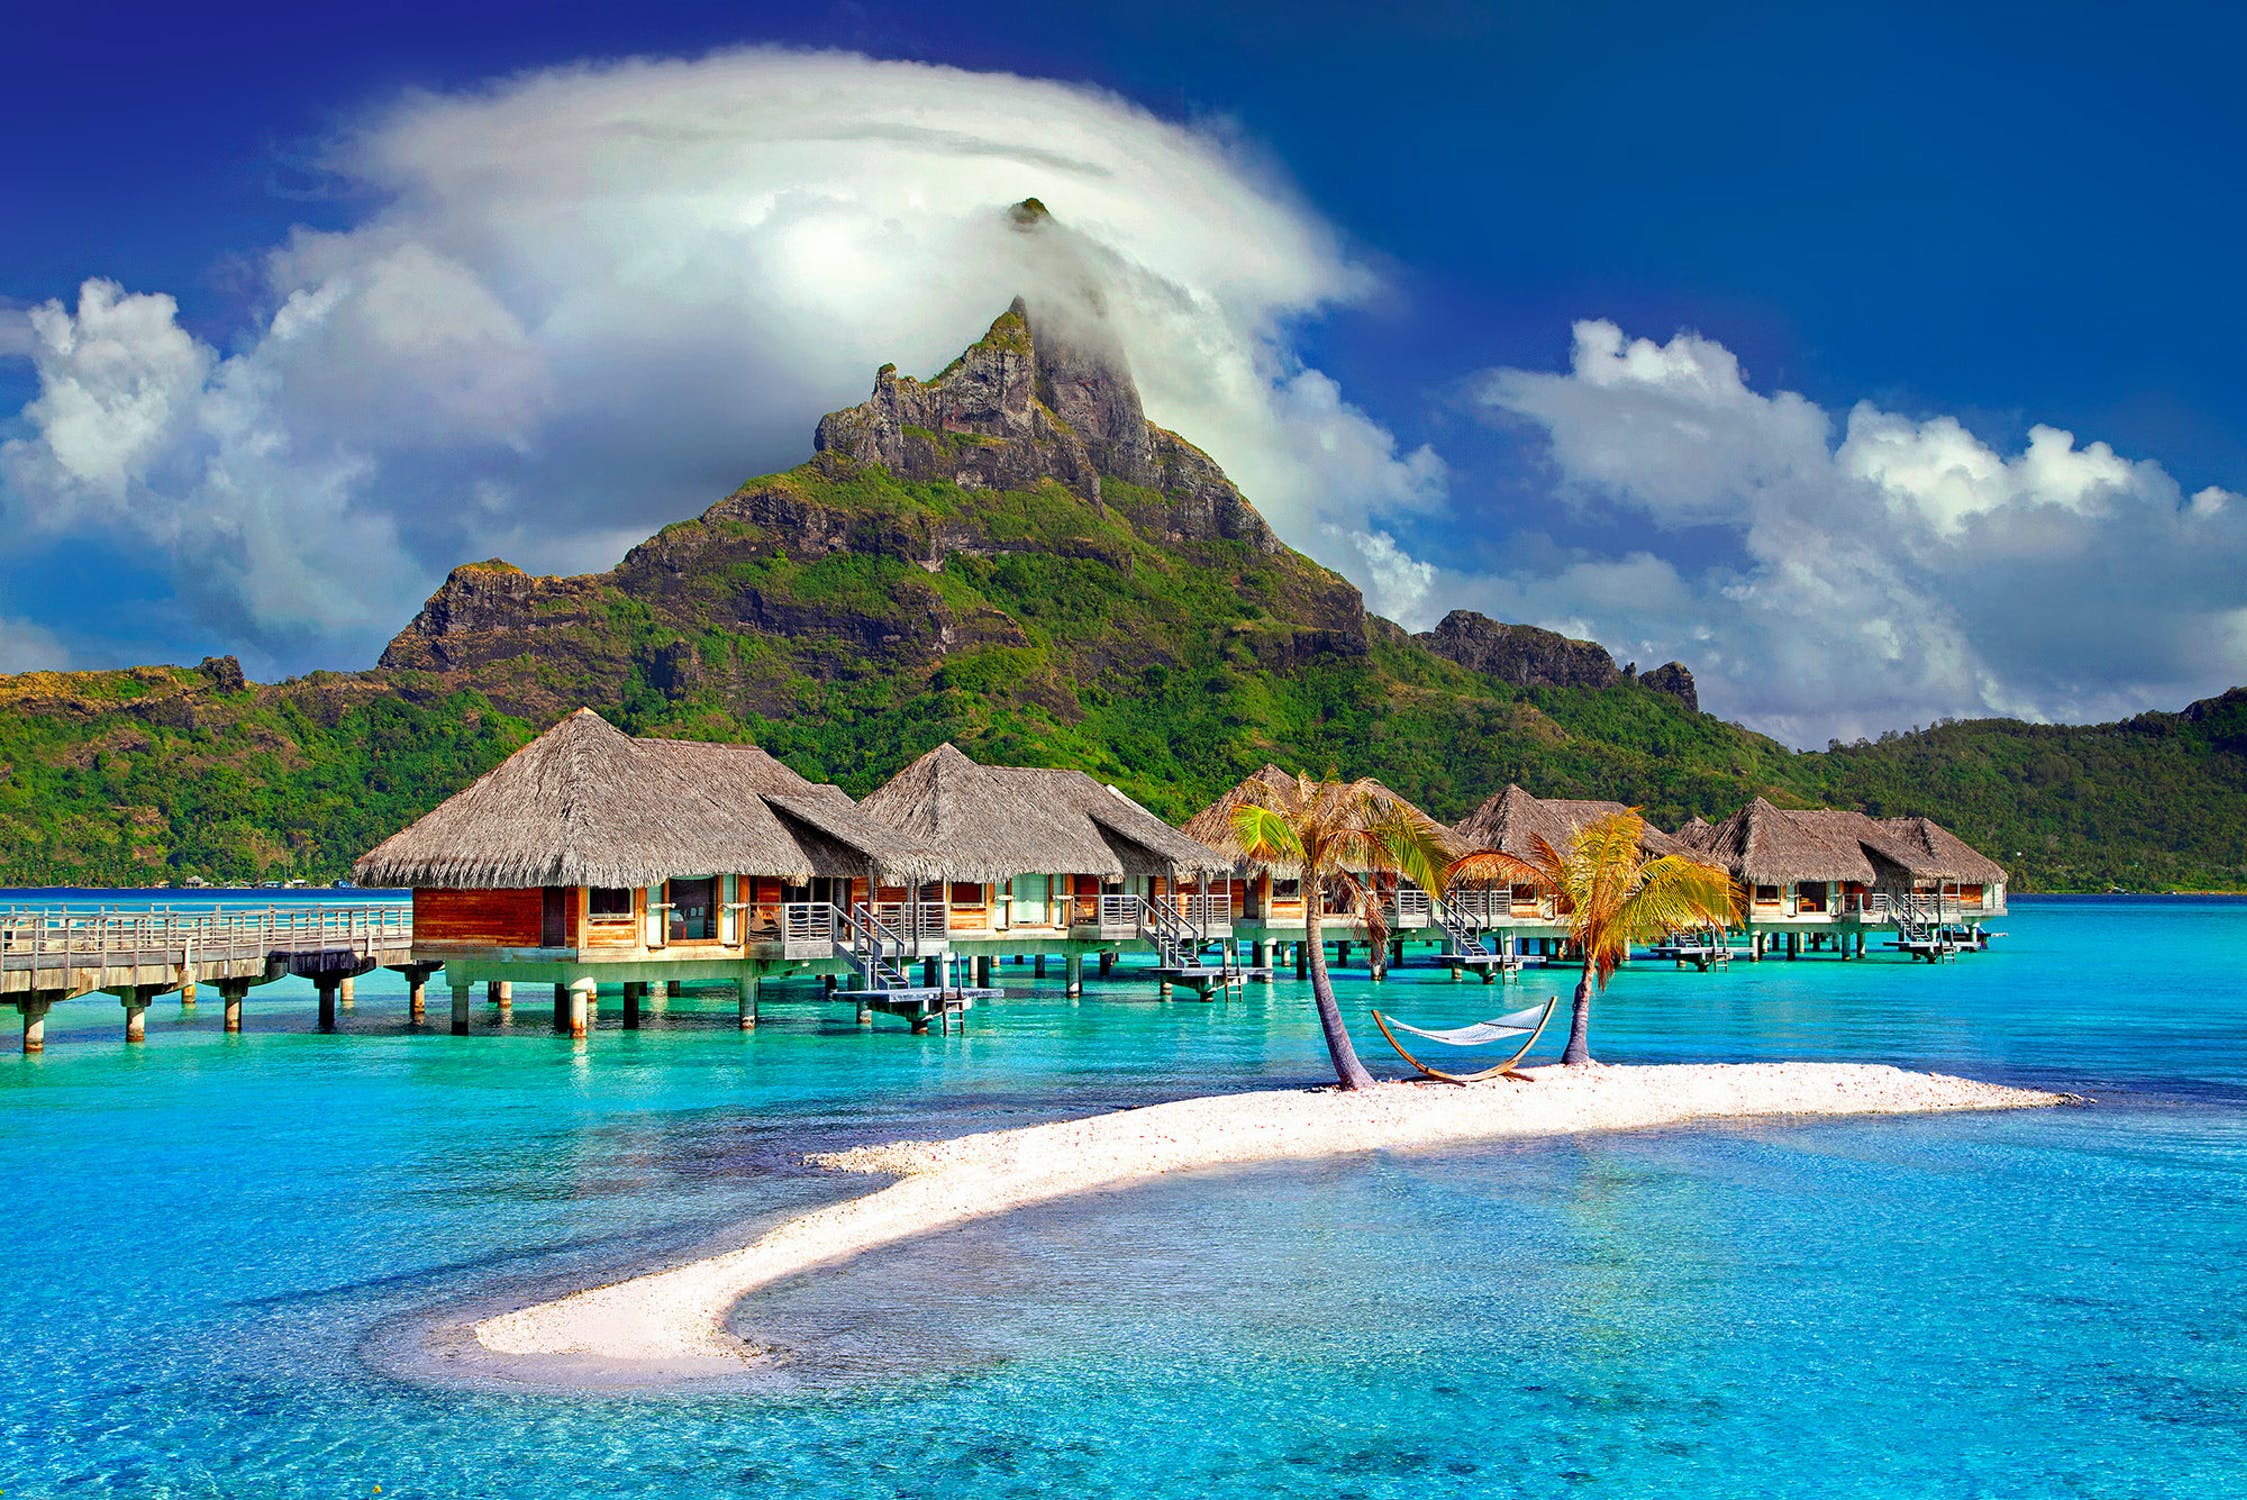 Gerald nahm Edith mit nach Tahiti für einen Überraschungsurlaub | Quelle: Pexels